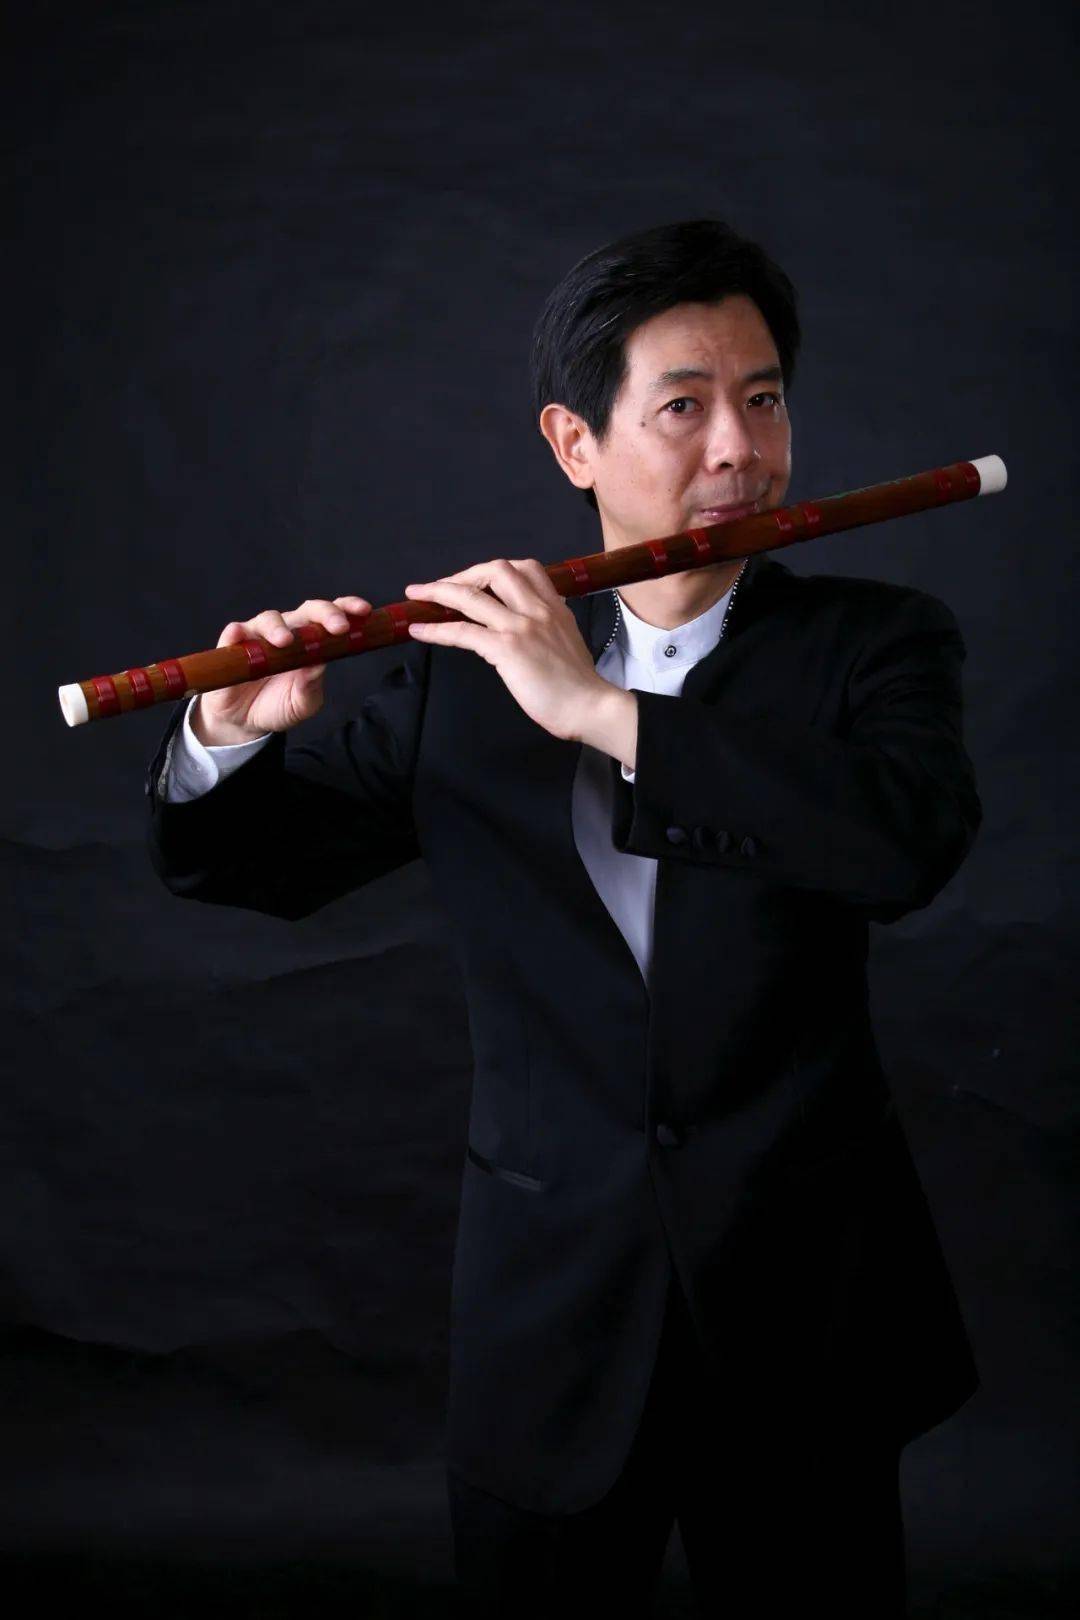 王次恒,中国著名笛箫演奏家,中央民族乐团原副团长,首席笛子,管乐声